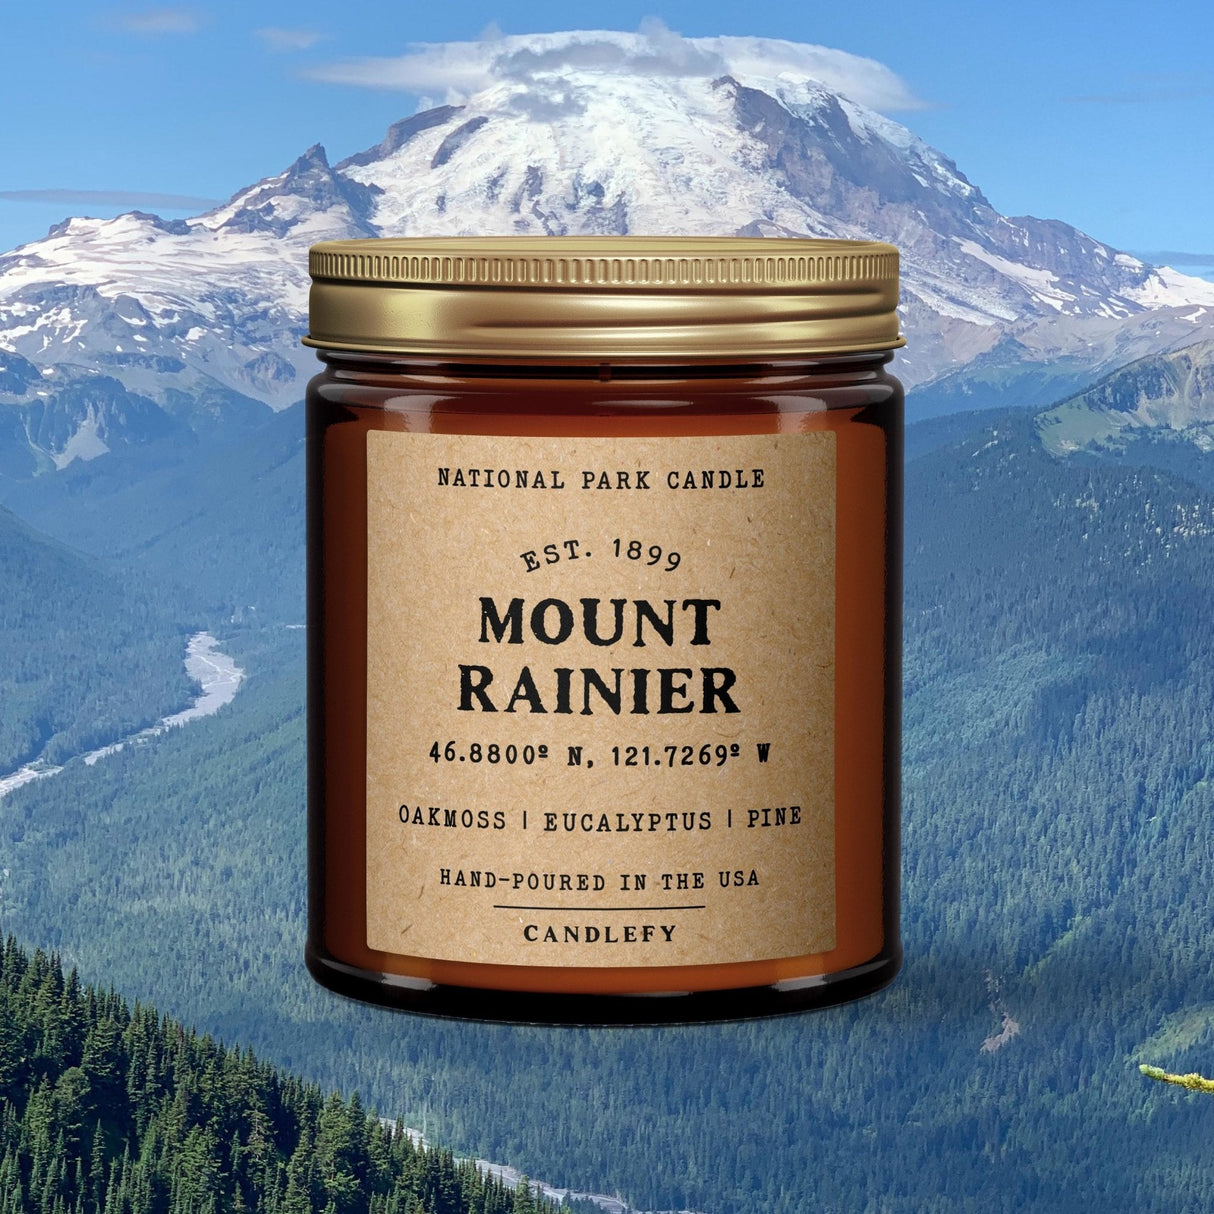 Mount Rainier National Park Candle